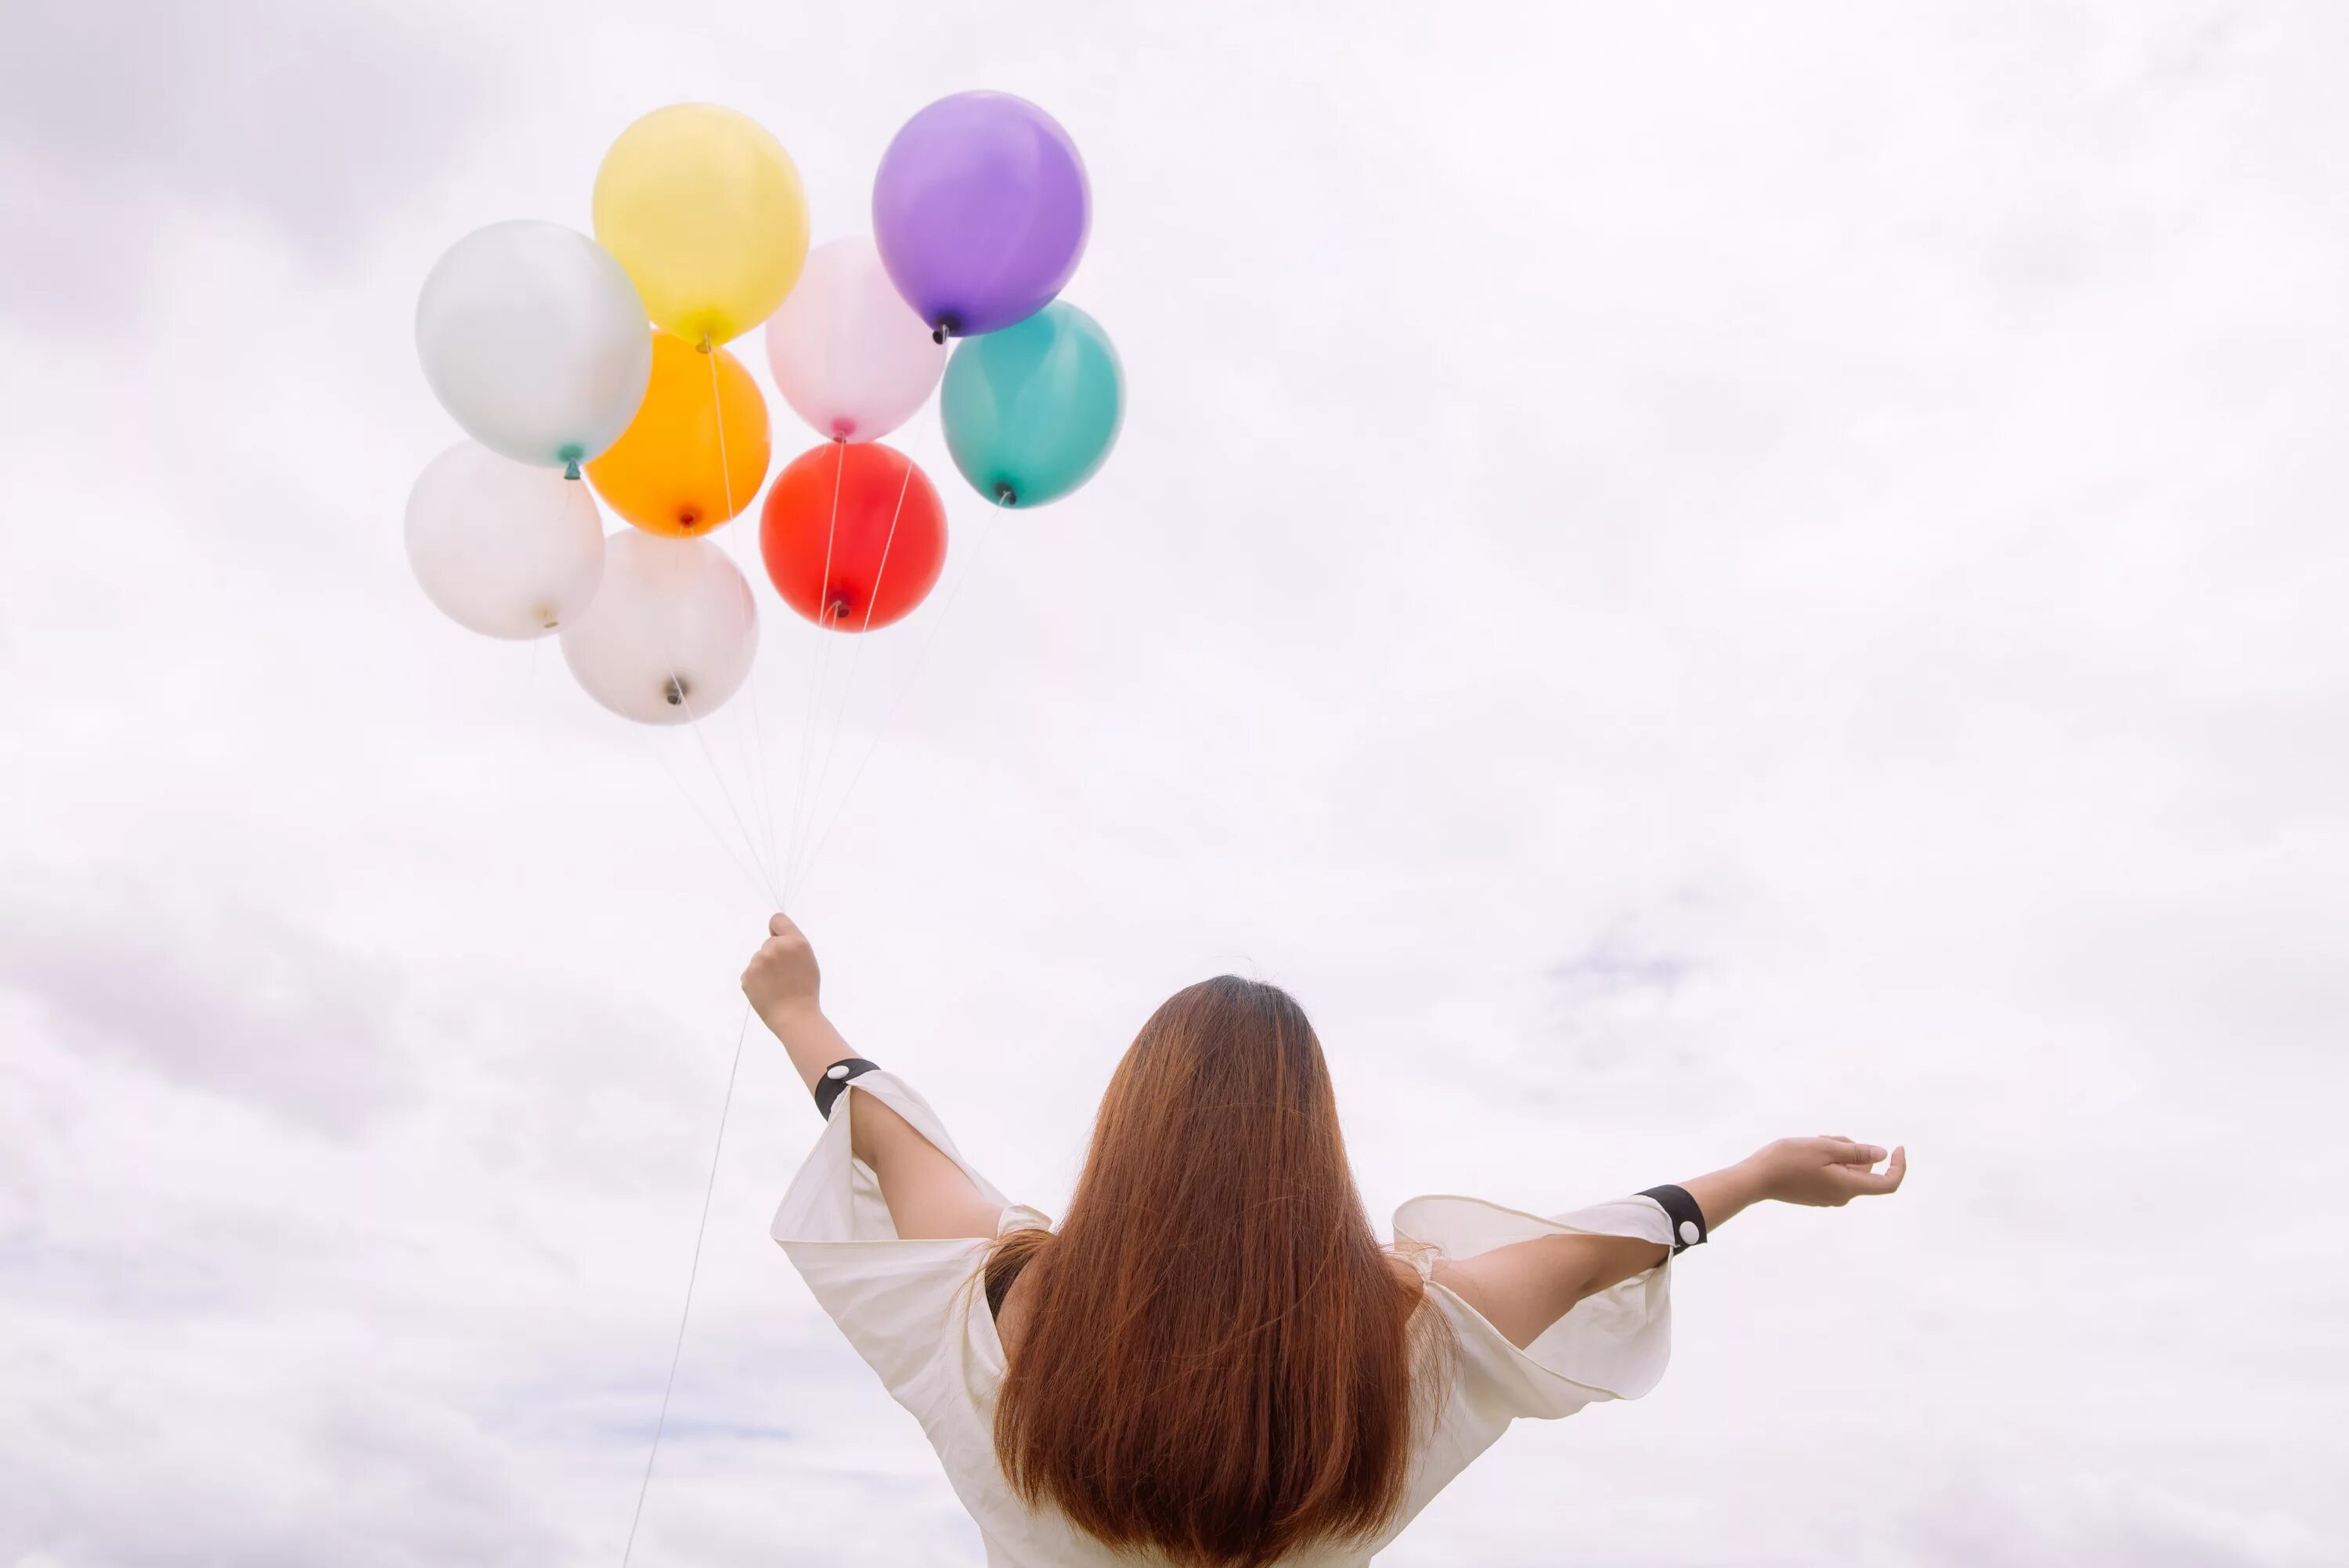 Танец с воздушными шарами. Девушка с шариками воздушными. Воздушный шарик в руке. Шарики в небе. Счастливая девушка с шариками.